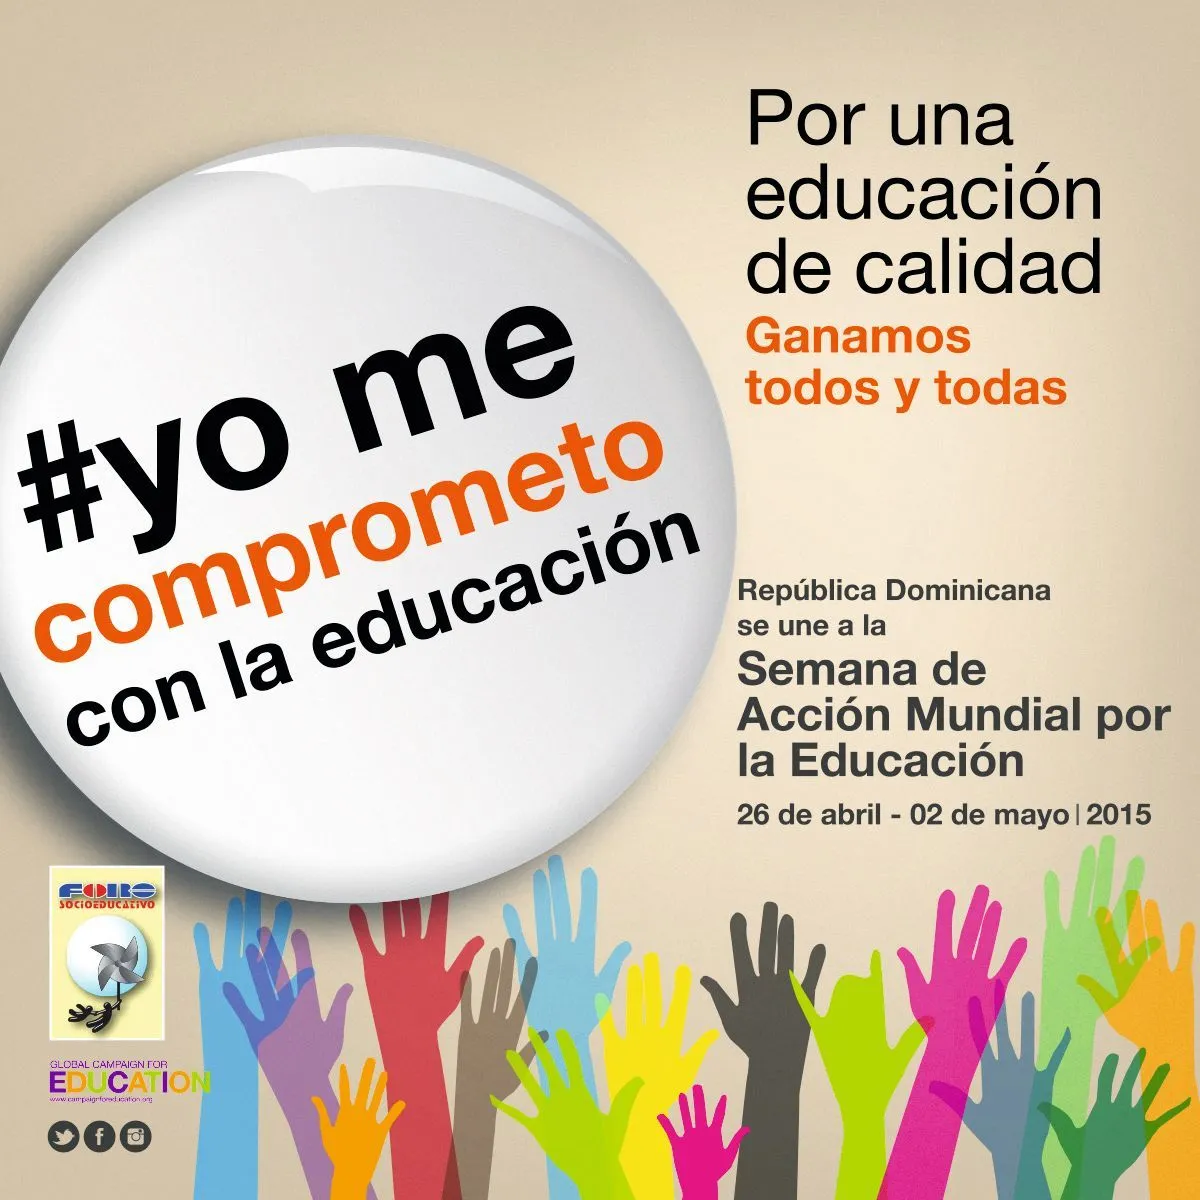 Cartel de la Semana de Acción Mundial por la Educación, Foro socioeducativo, República Dominicana, 2015